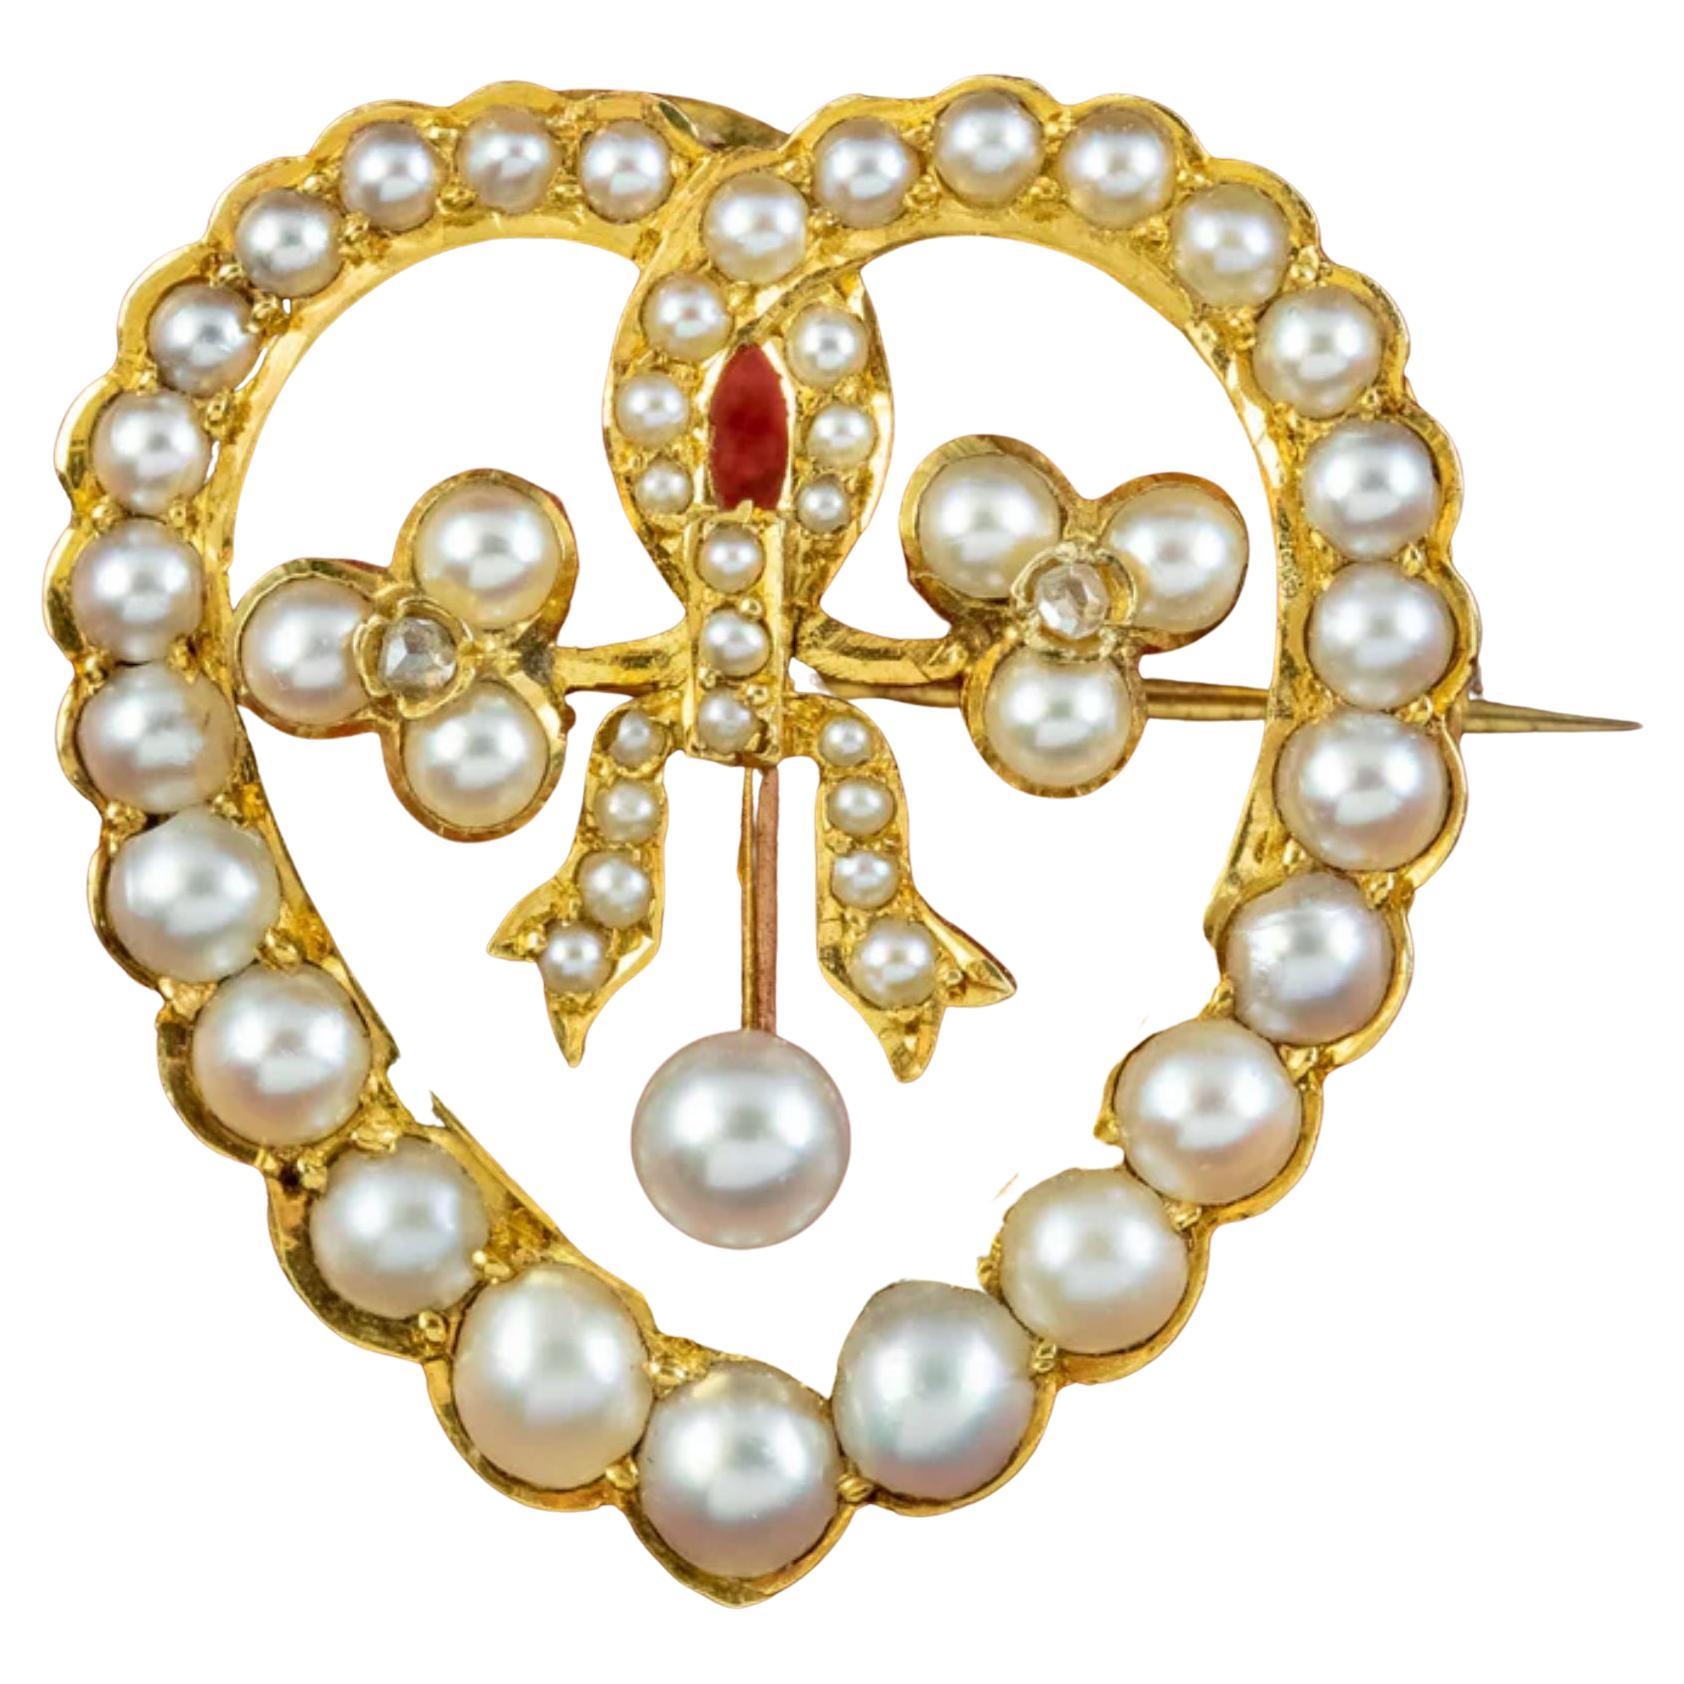 Antike edwardianische Perlen-Diamanten-Herz-Brosche aus 15-karätigem Gold, um 1901 - 1915